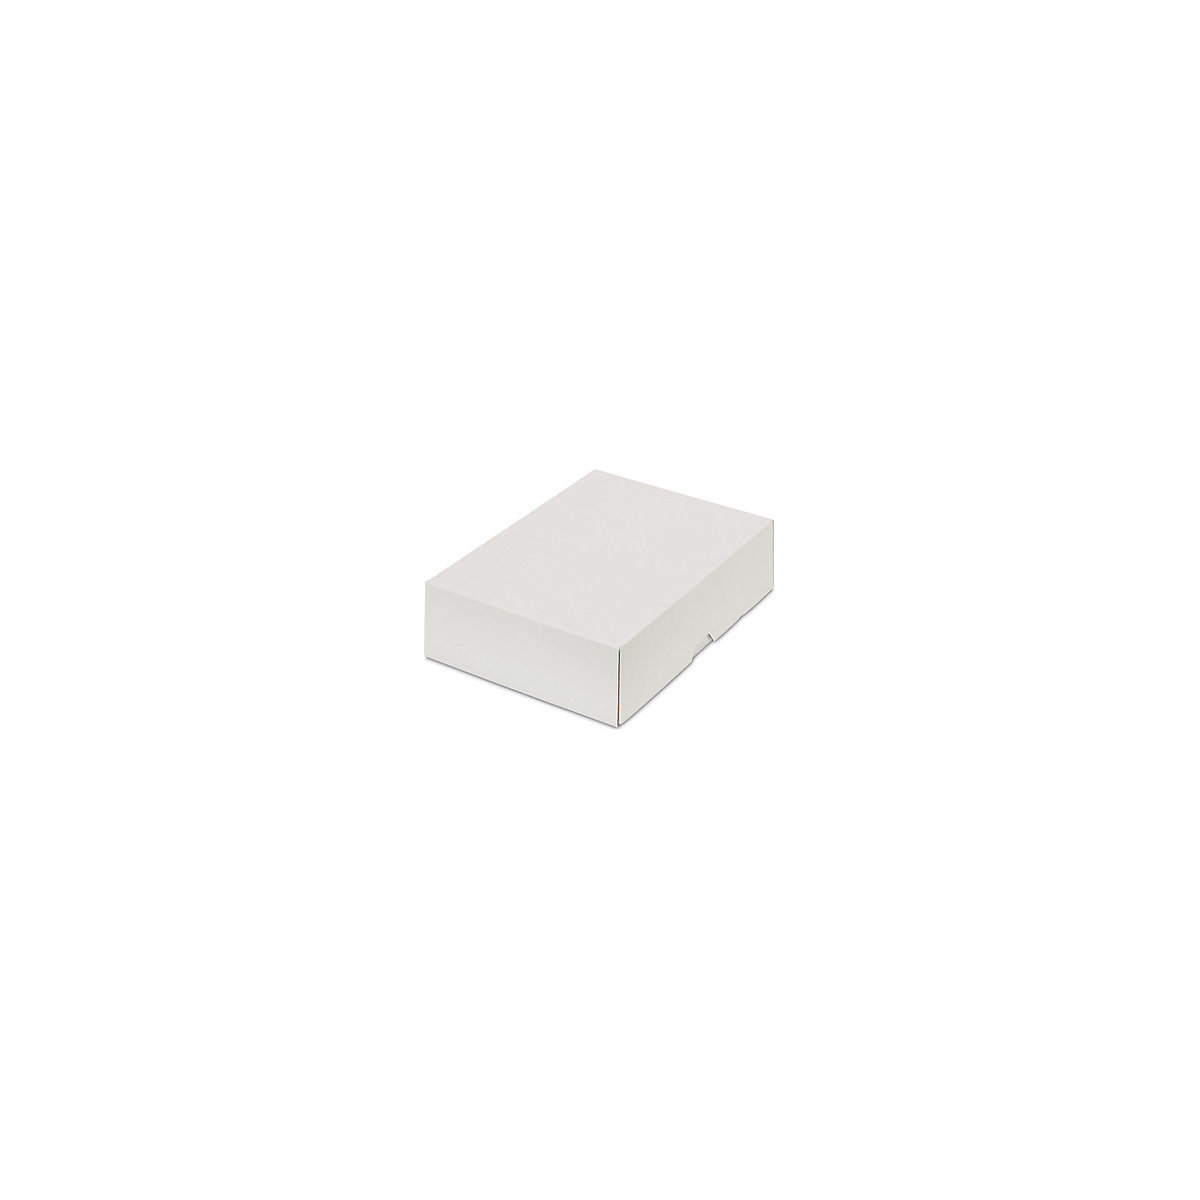 Stülpdeckelkarton, zweiteilig, Innenmaße 227 x 155 x 55 mm, A5, weiß, ab 150 Stk-23